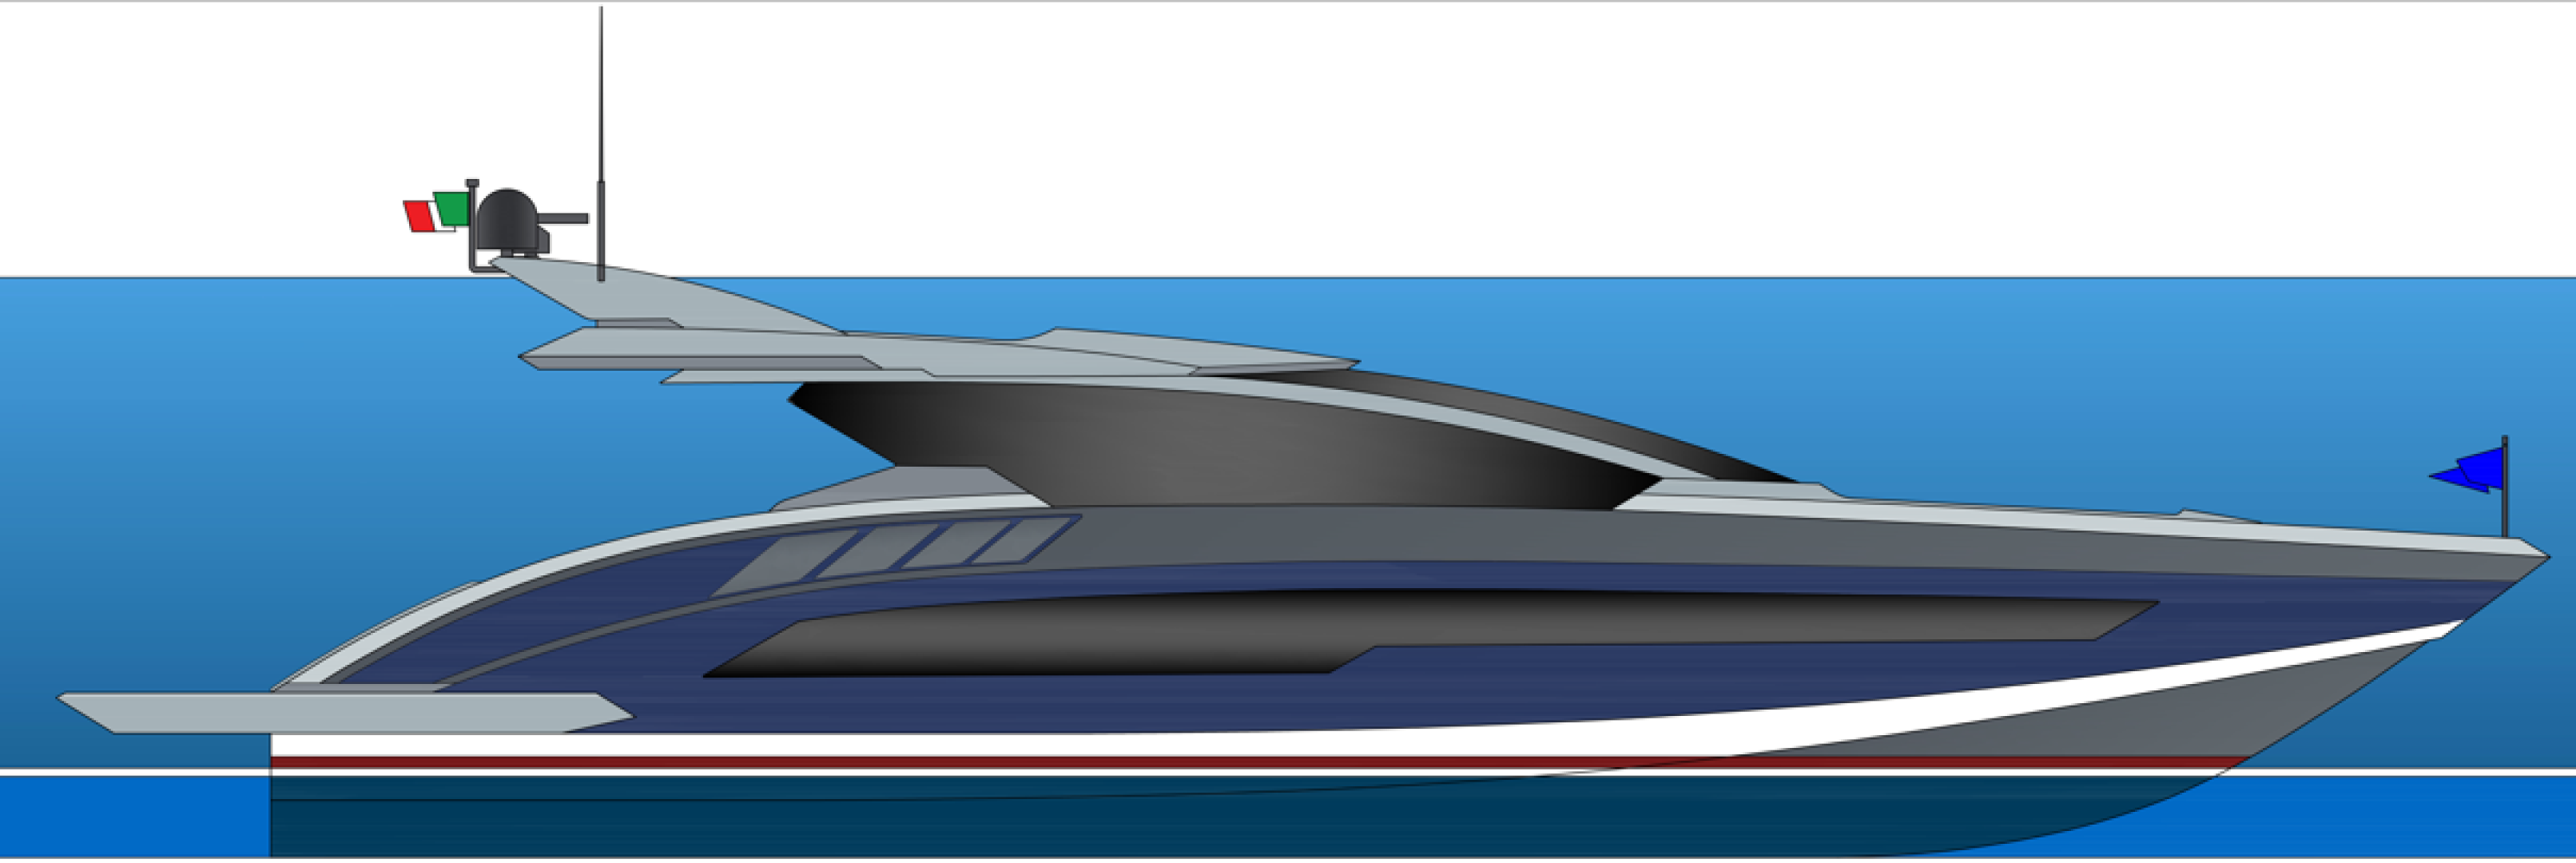 Nuovo progetto Falco 24 yacht Open di 26 metri